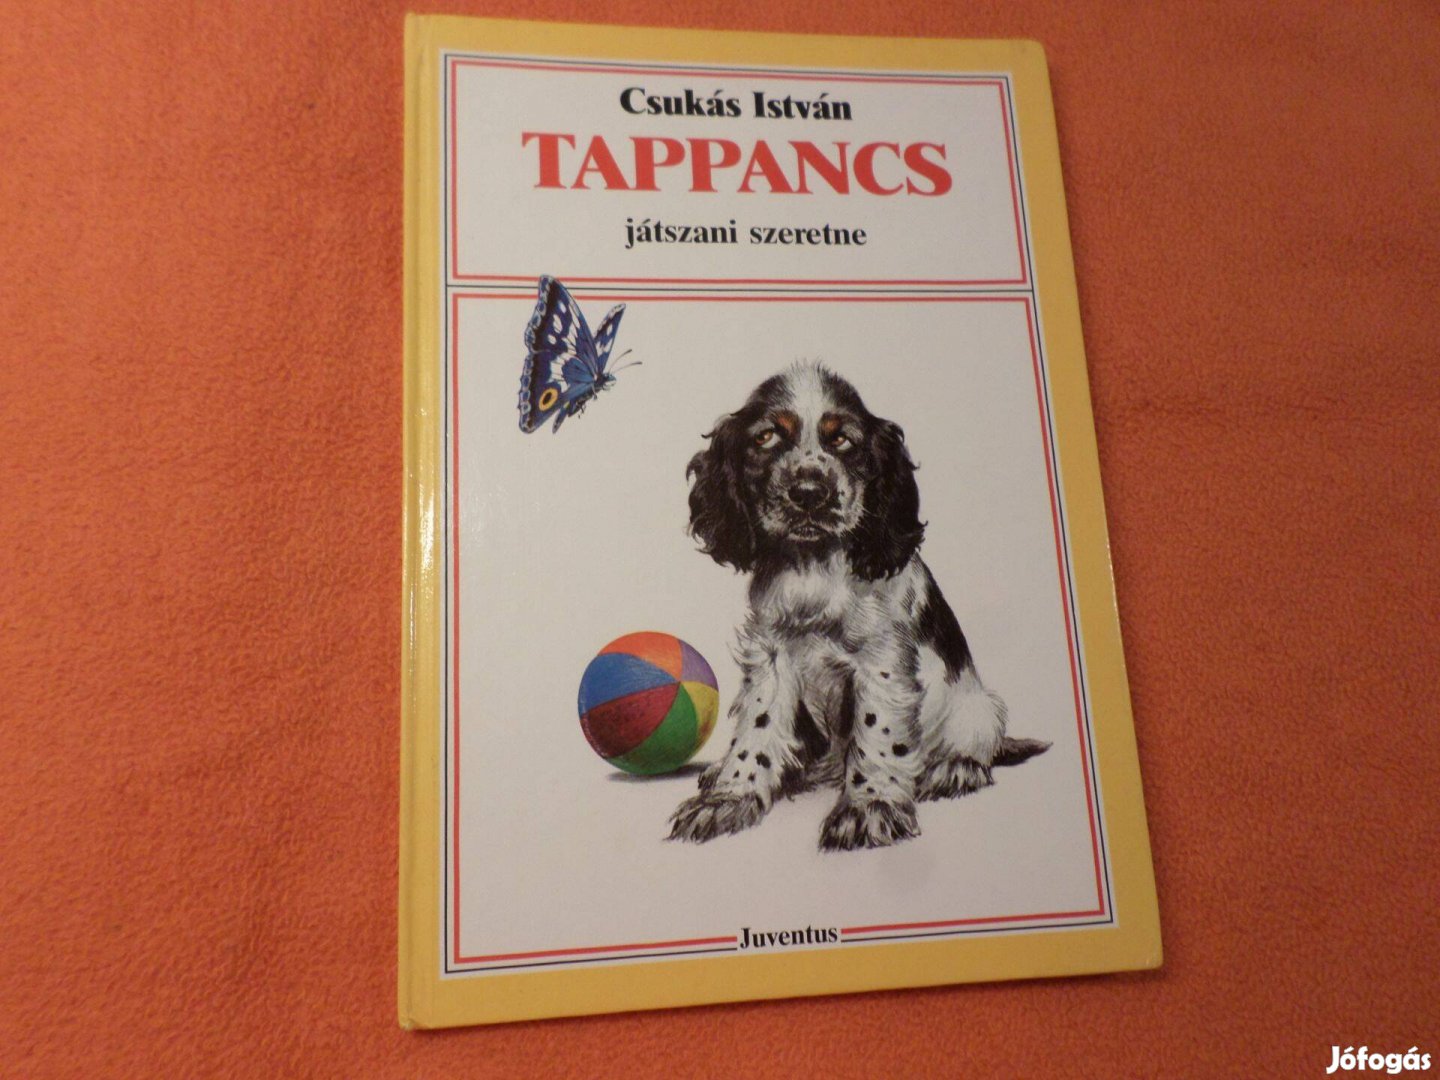 Tappancs játszani szeretne Írta: Csukás István 1989 Gyermekkönyv